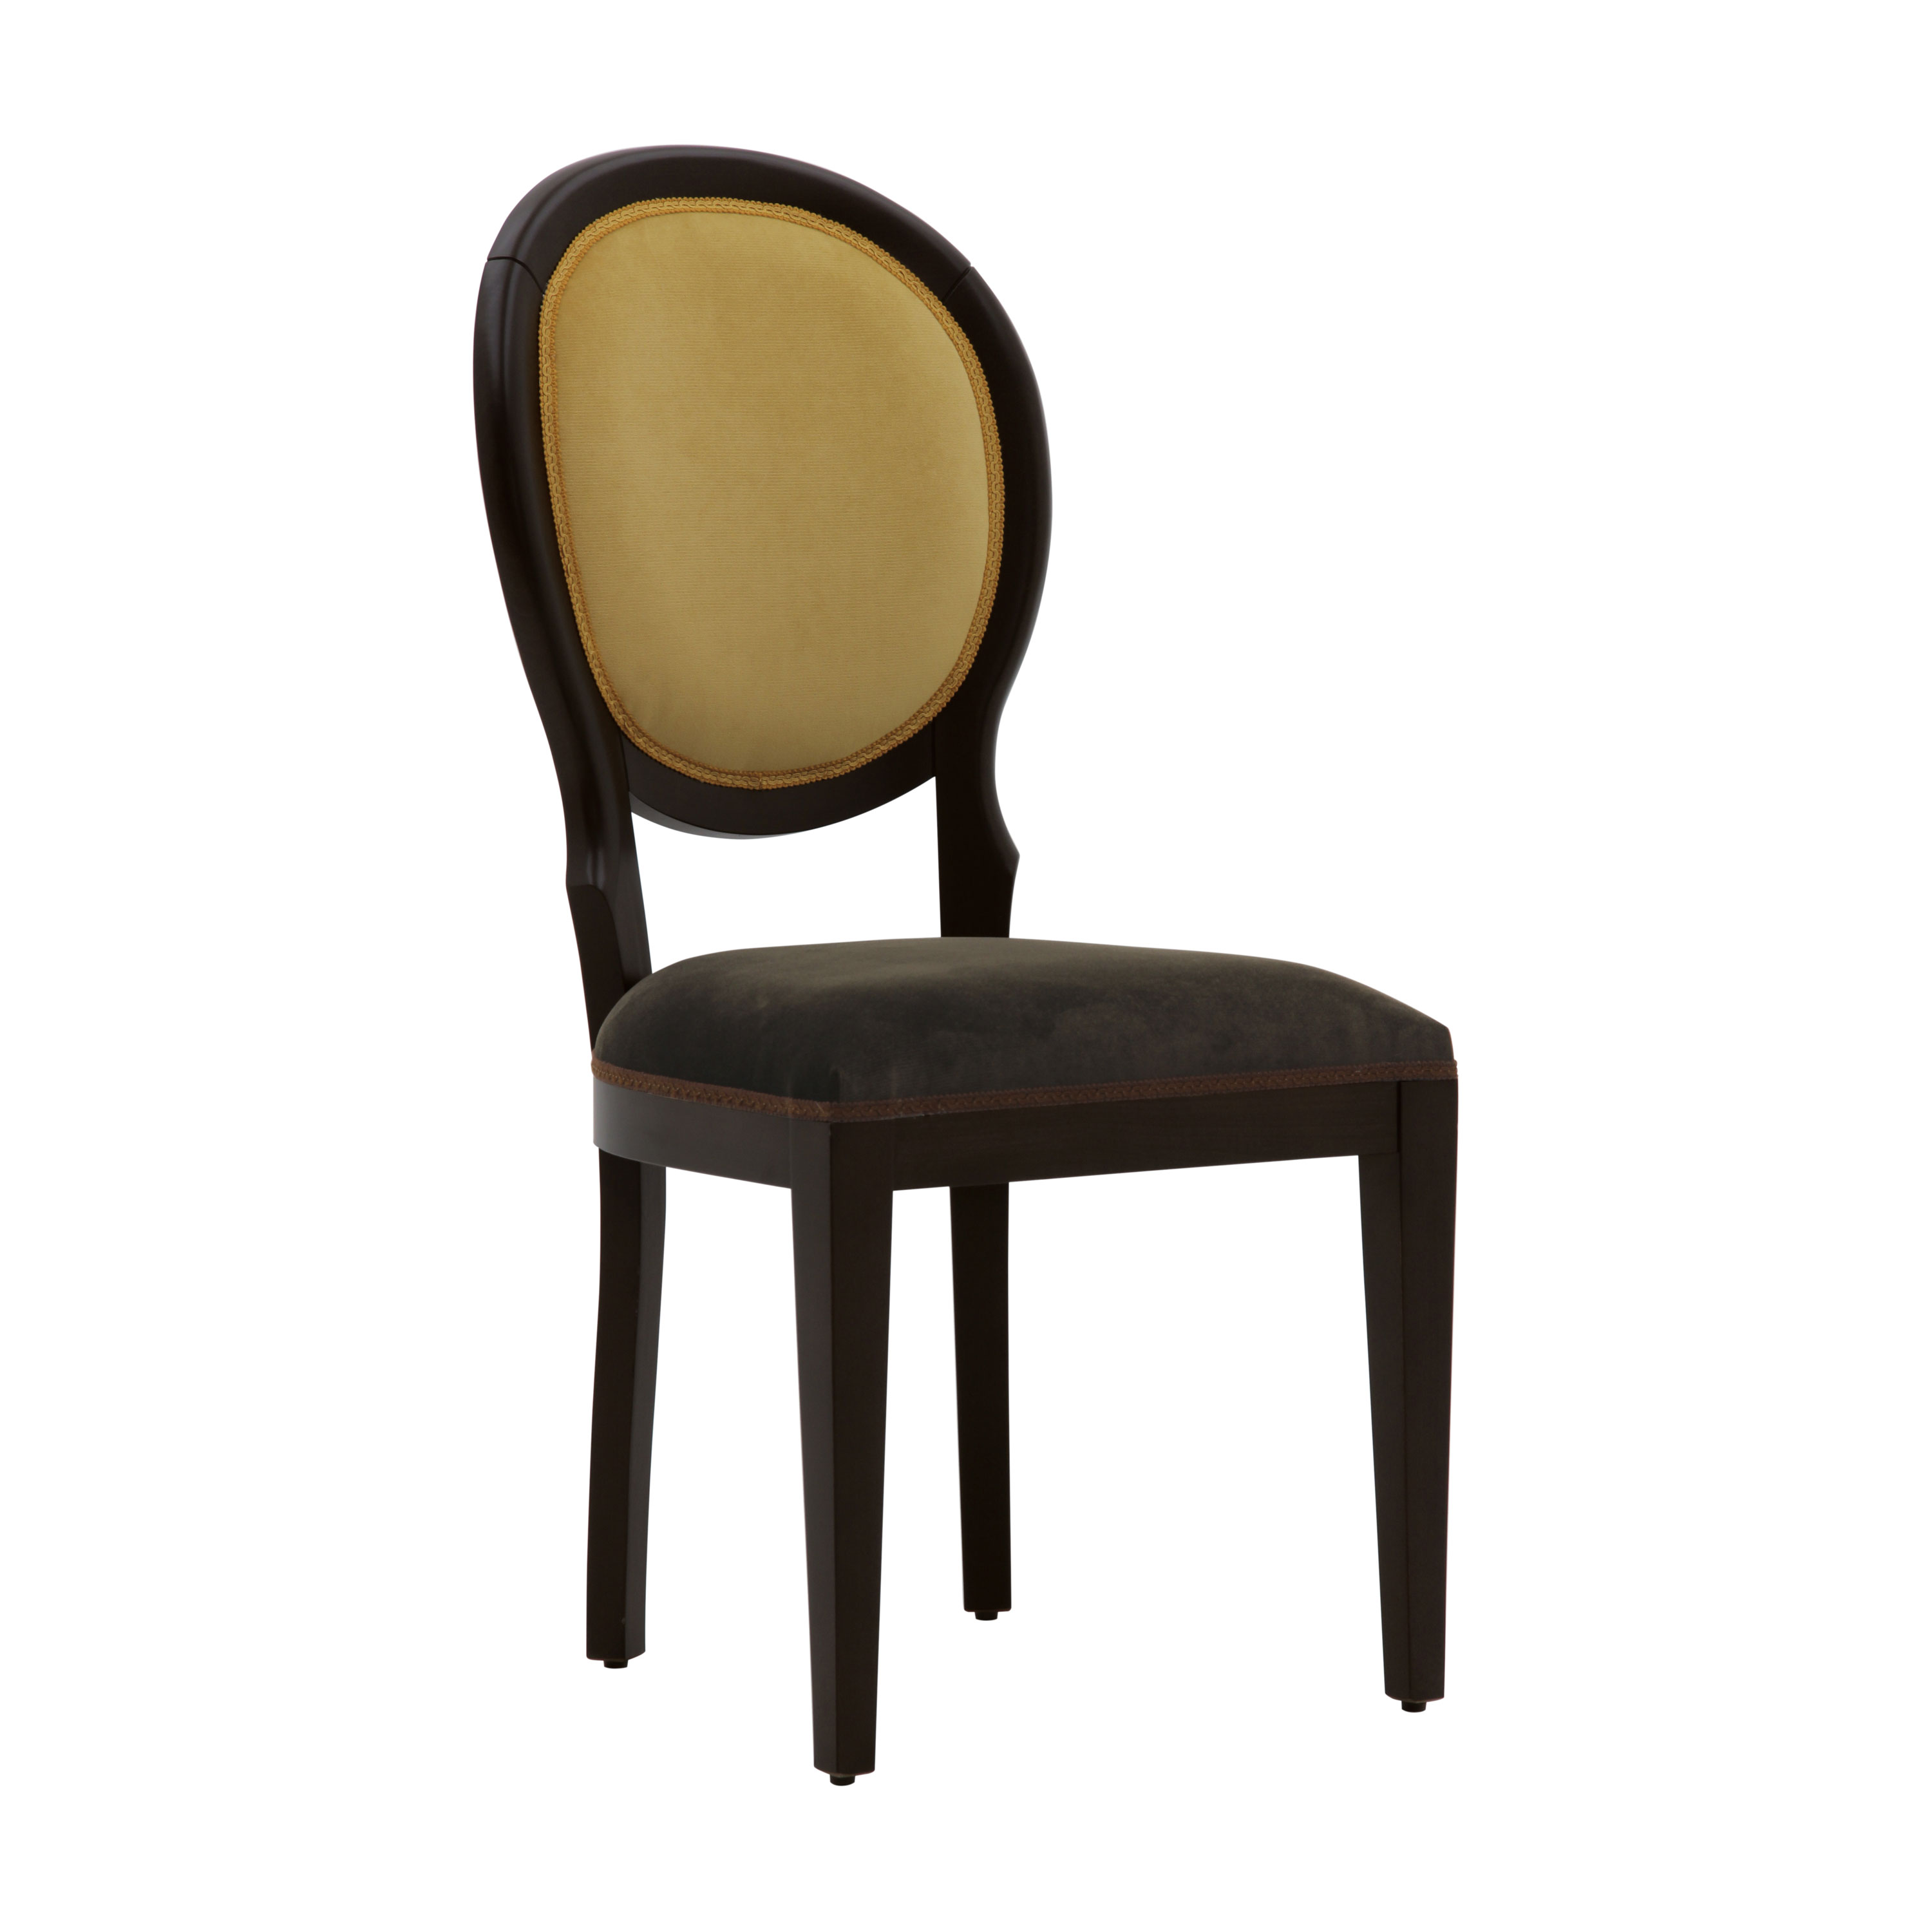 bewondering prijs waarschijnlijkheid Modern Style Chair Made of Wood Julia